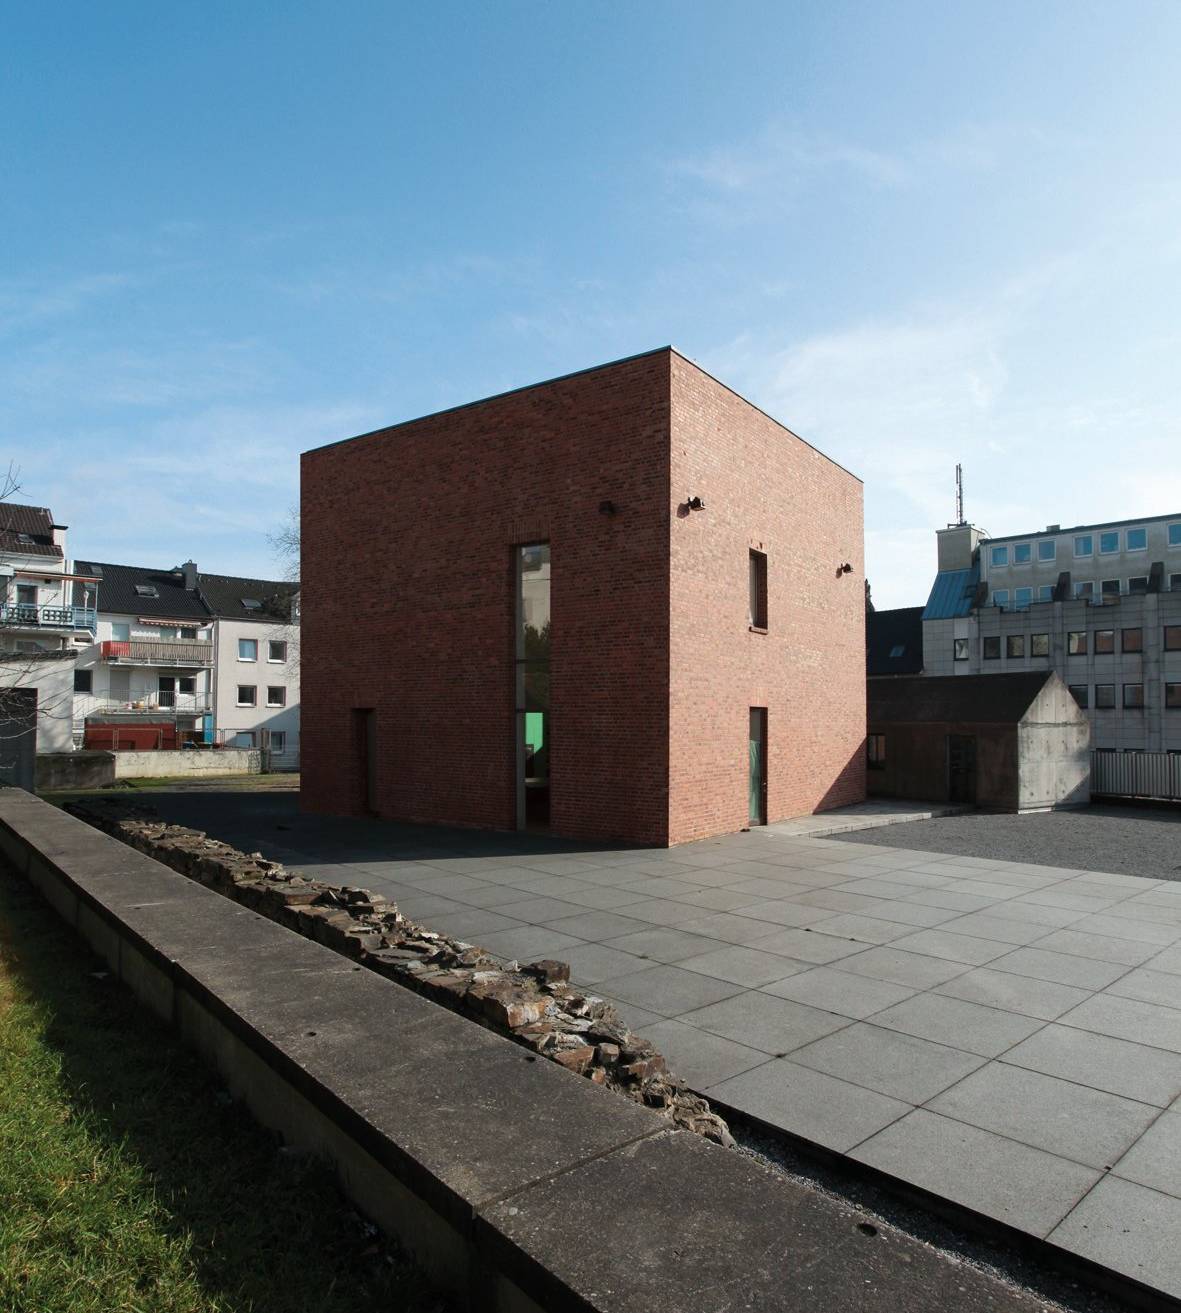  Die Begegnungsstätte Alte Synagoge in Wuppertal. 